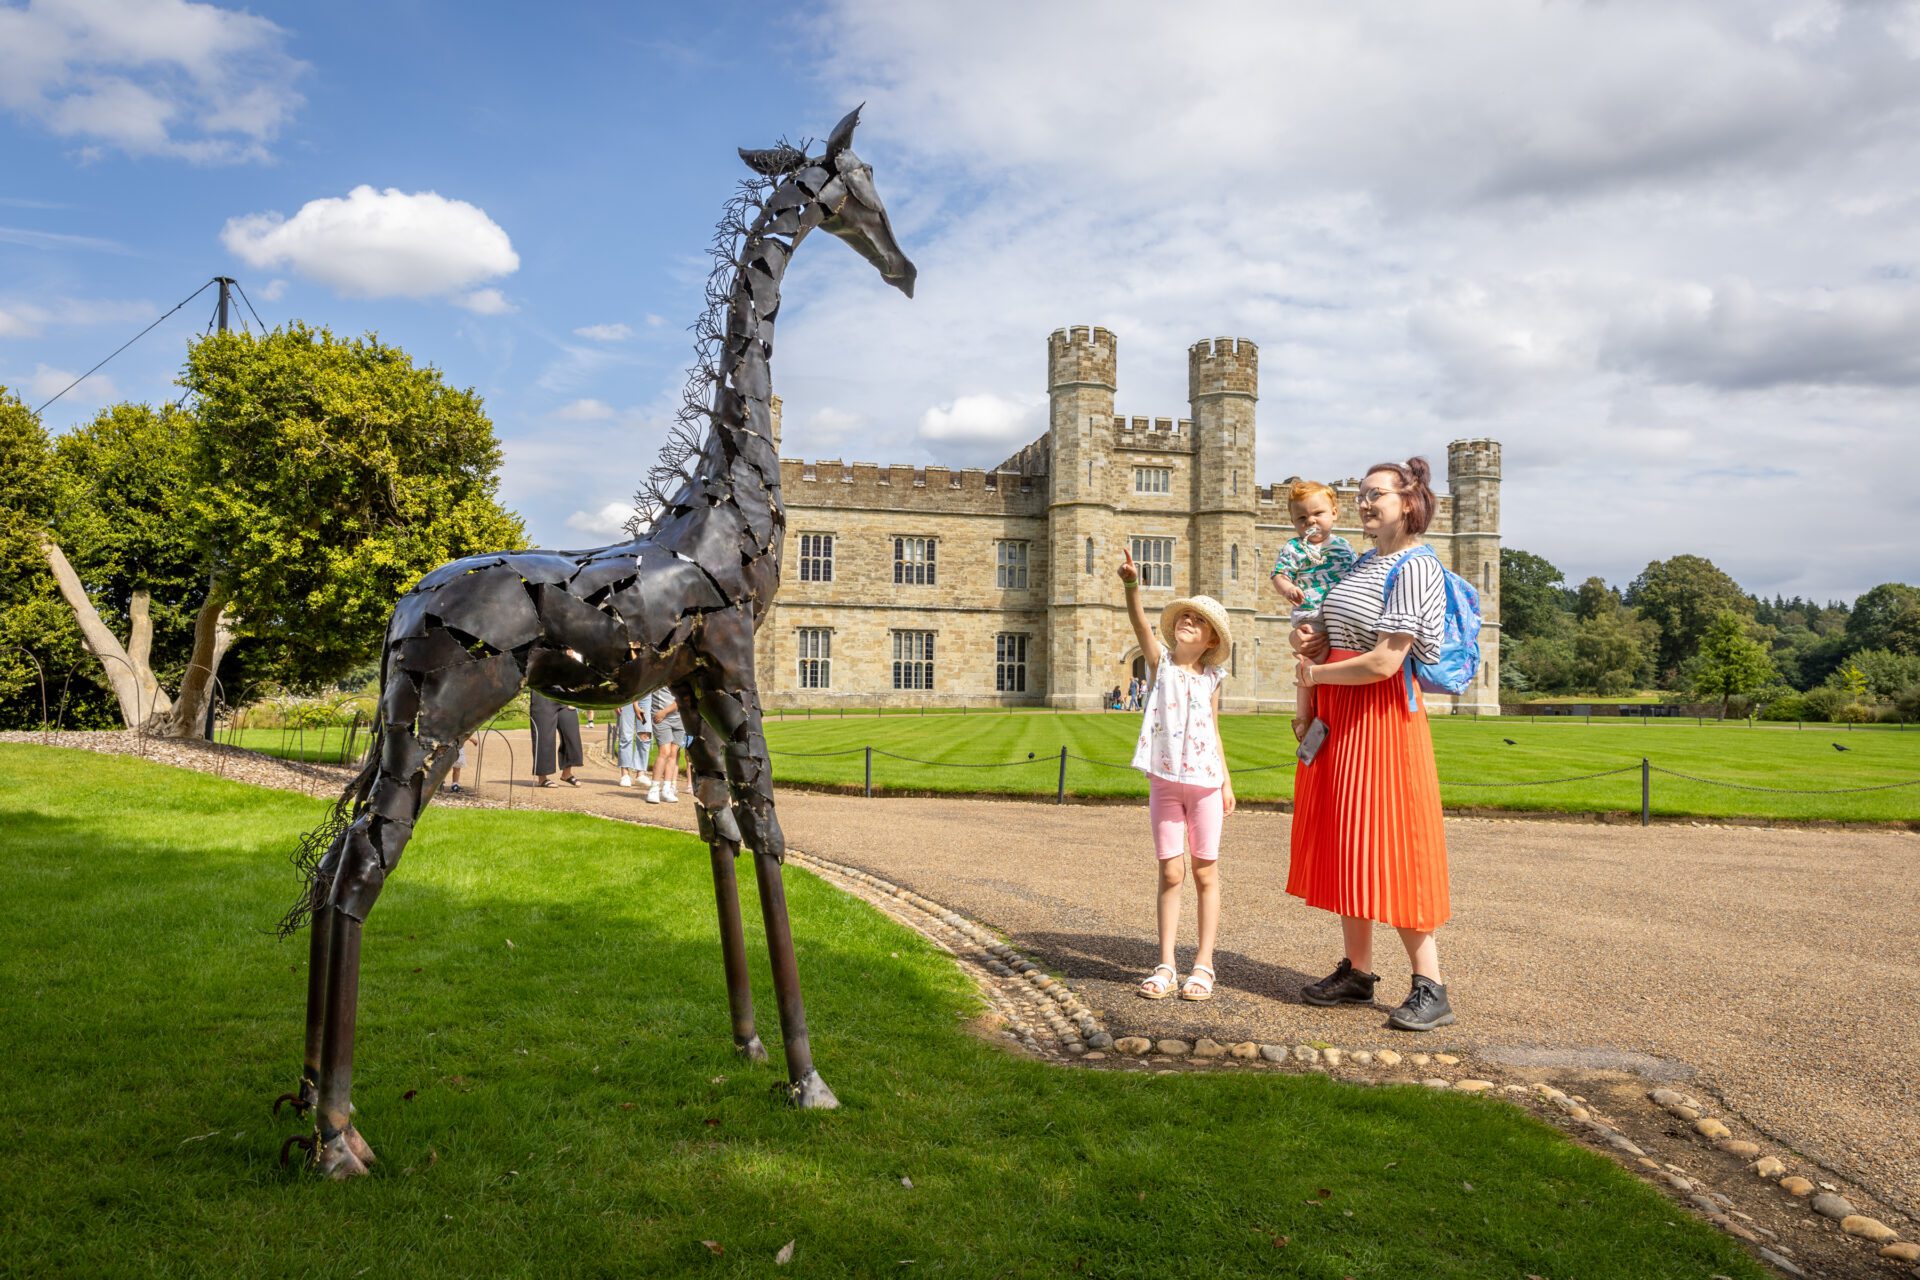 Sublime Sculpture Trail Safari at Leeds Castle in Kent